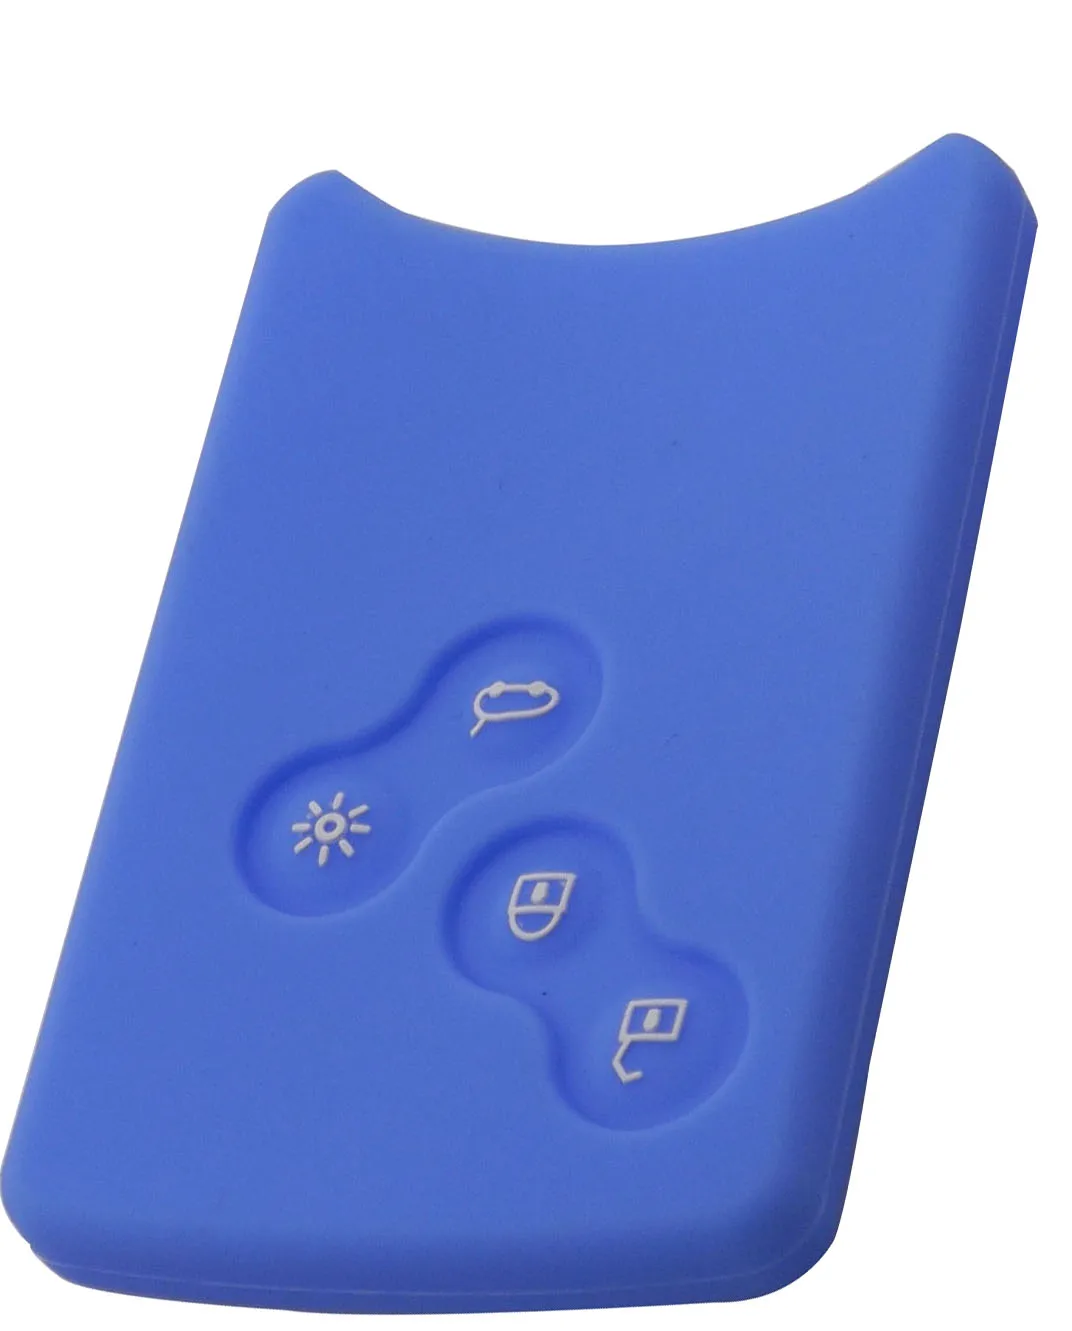 4 кнопки силиконовый резиновый чехол для ключей протектор для Renault Clio Logan Megane 2 3 Koleos Scenic карта брелок для ключей автомобильный стиль - Название цвета: light blue